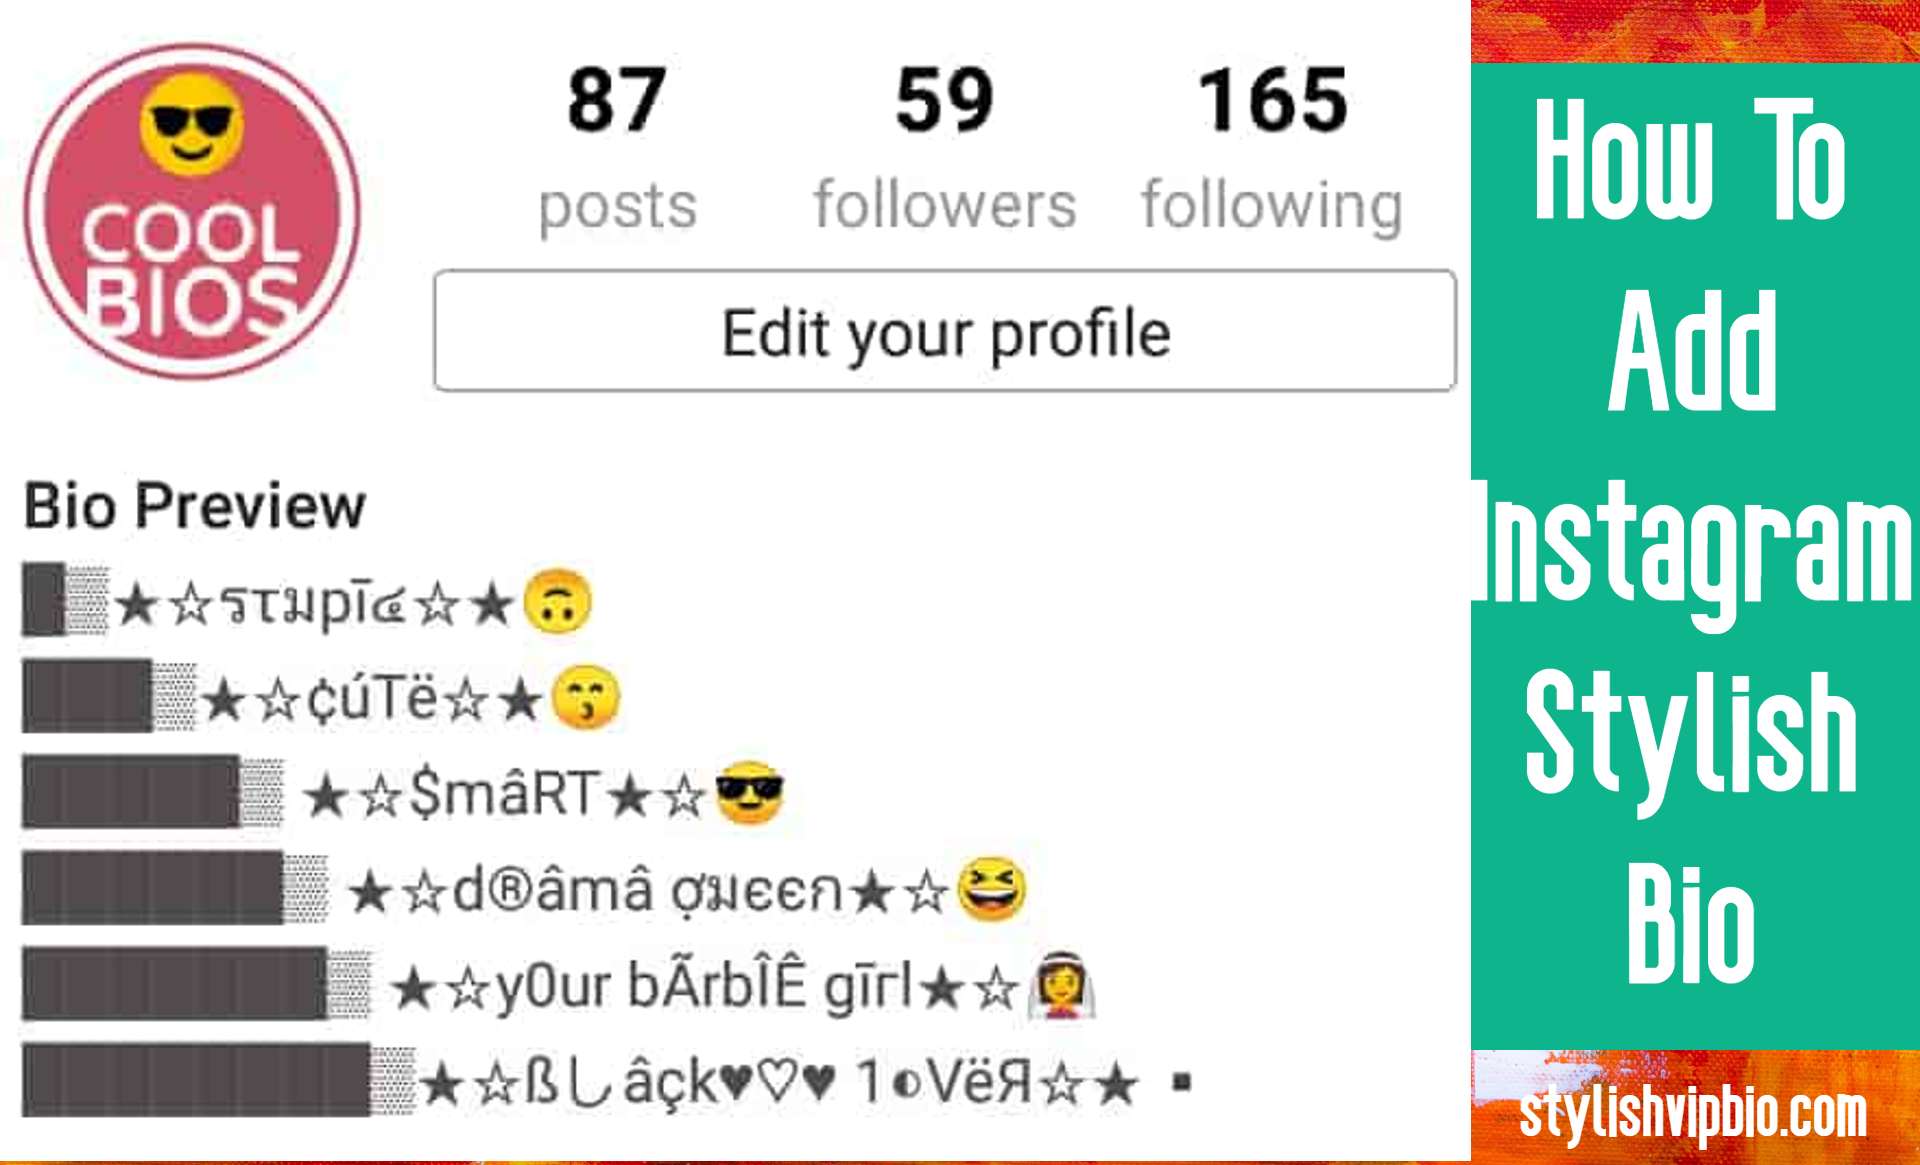 How To Add Instagram Stylish Bio